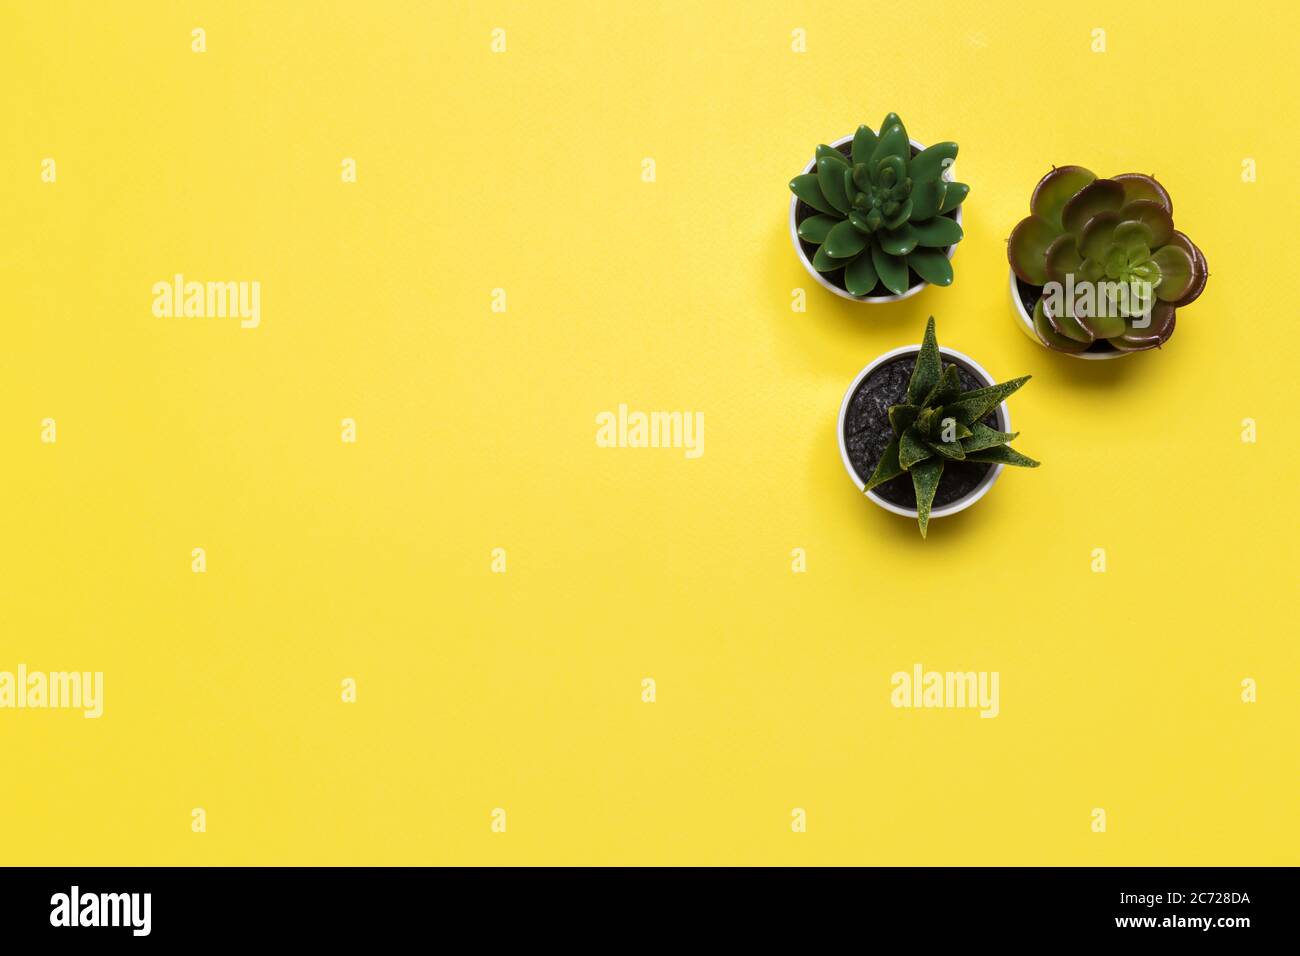 banner o intestazione succulents con piante diverse su uno sfondo giallo morbido. vista dall'alto, copyspace per il tuo testo Foto Stock